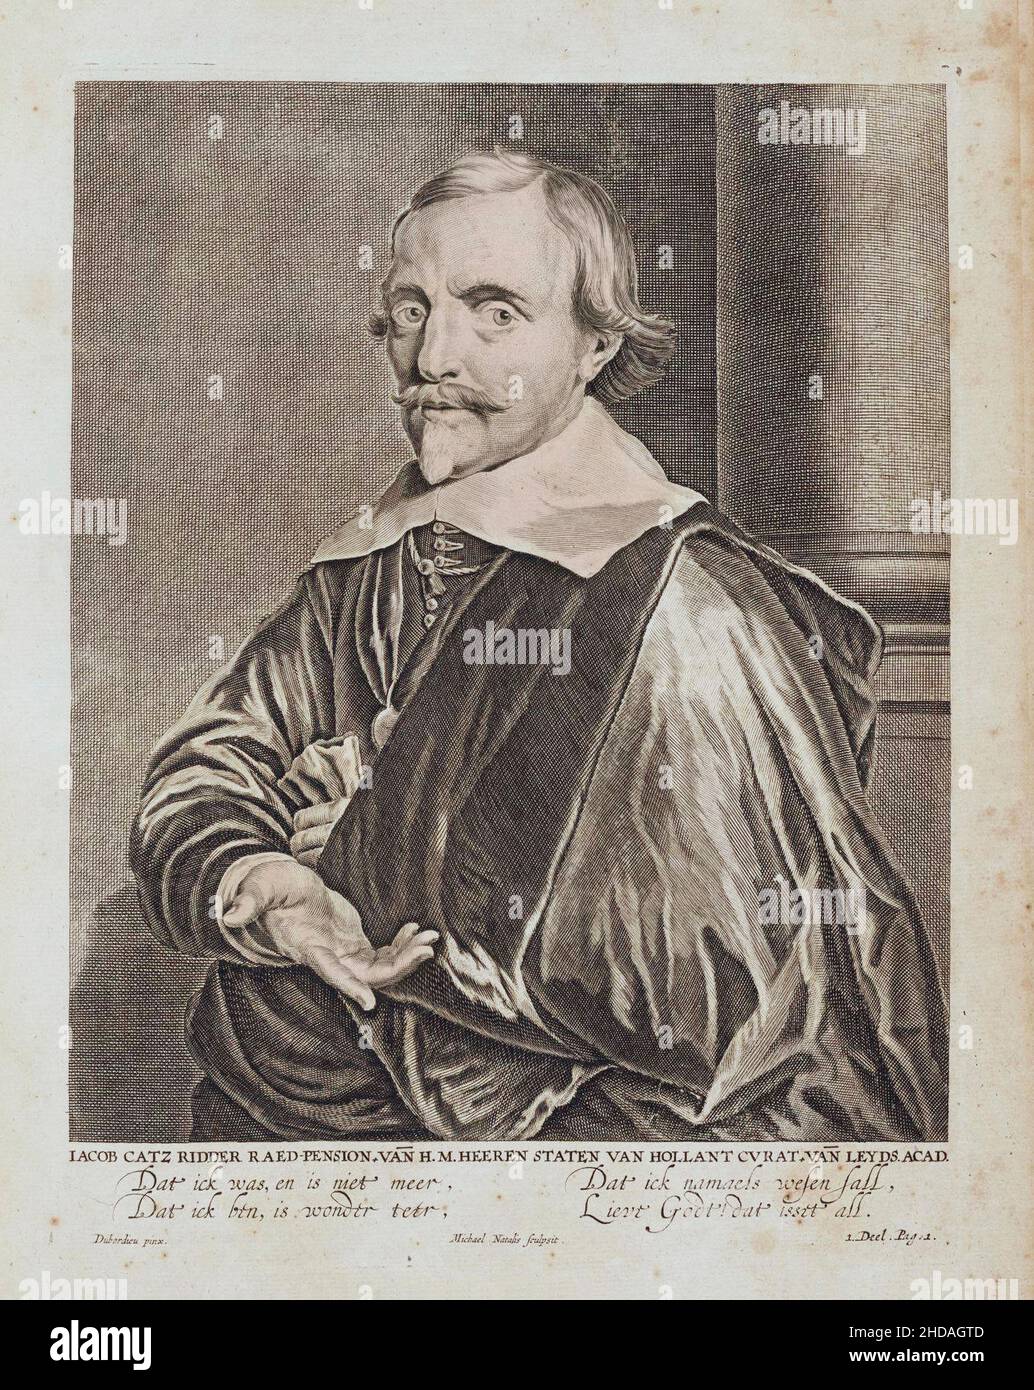 Jacob Cats Jacob Cats (1577 – 1660) è stato un poeta, umorista, giurista e politico olandese. È il più famoso per i suoi libri d'emblema. Foto Stock